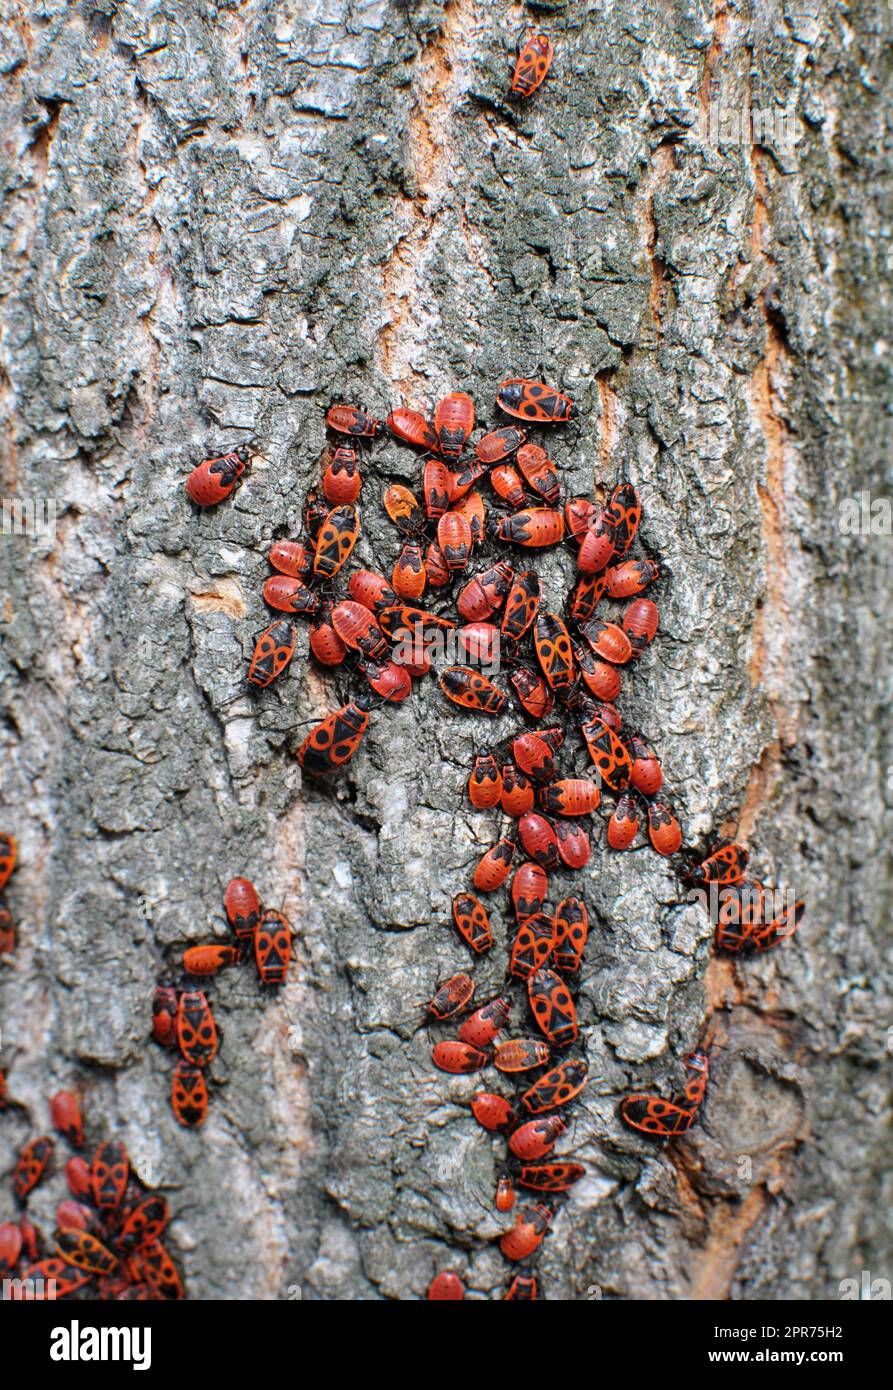 Colonie de Pyrrhocoris apterus coléoptères dans la nature sur un tronc d'arbre Banque D'Images